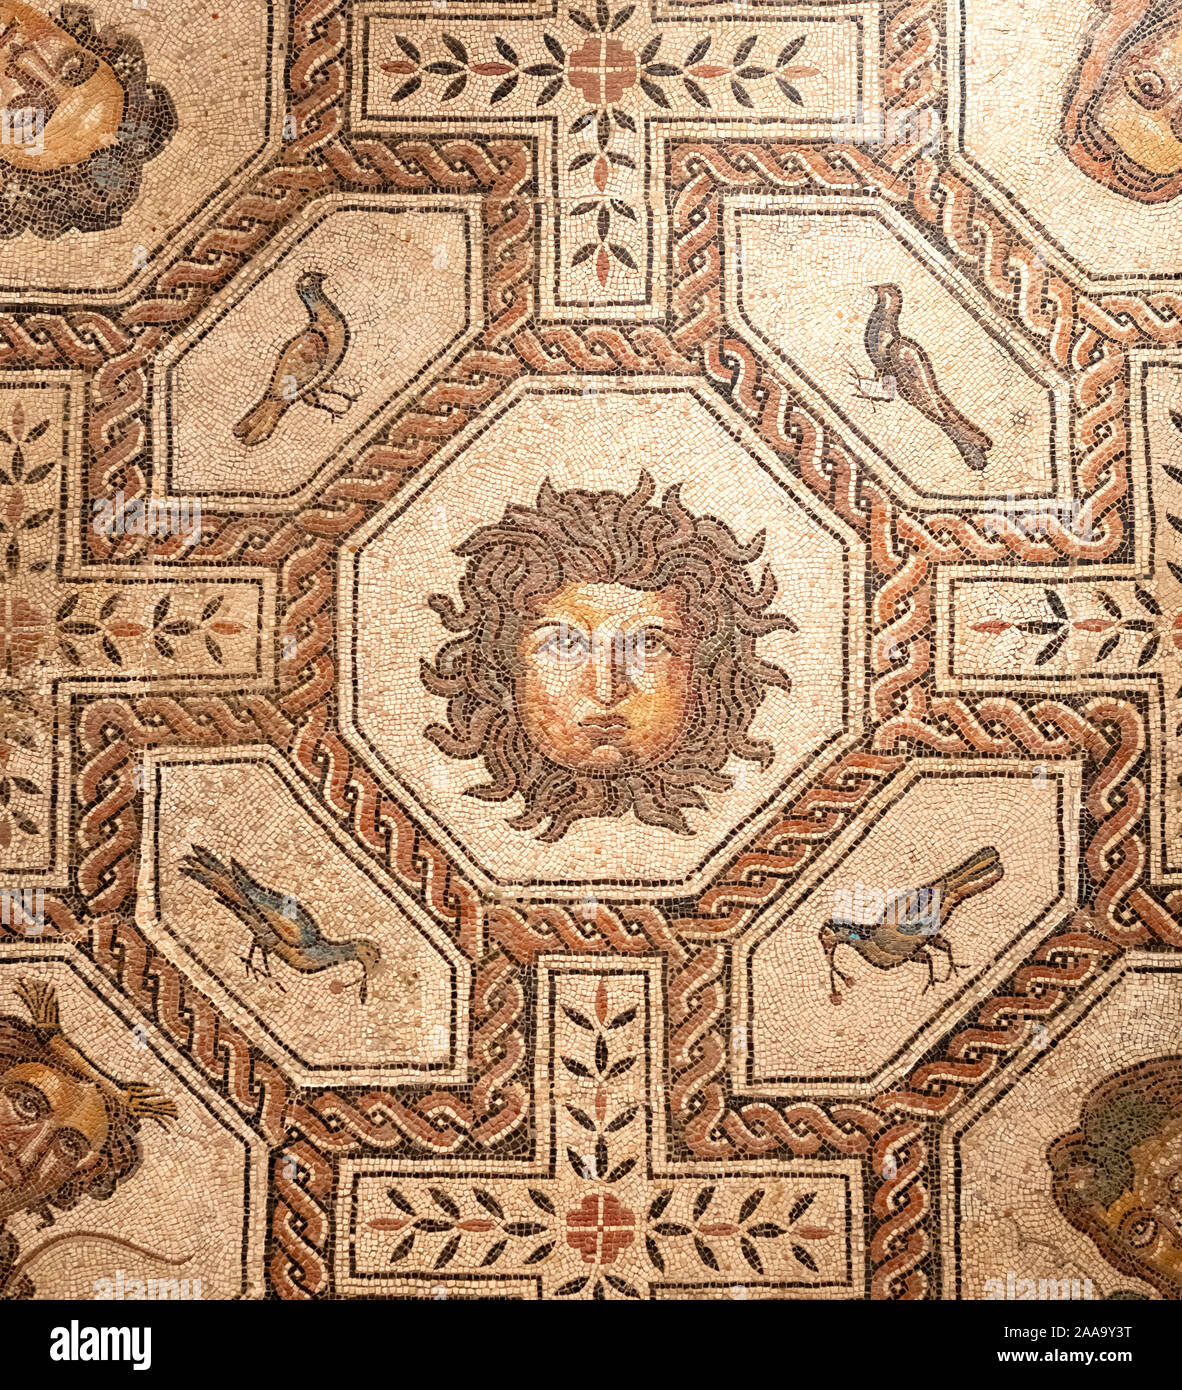 Mosaïque romaine montrant des visages, fleurs et oiseaux, dans le centre le mythe de méduse apparaît Banque D'Images